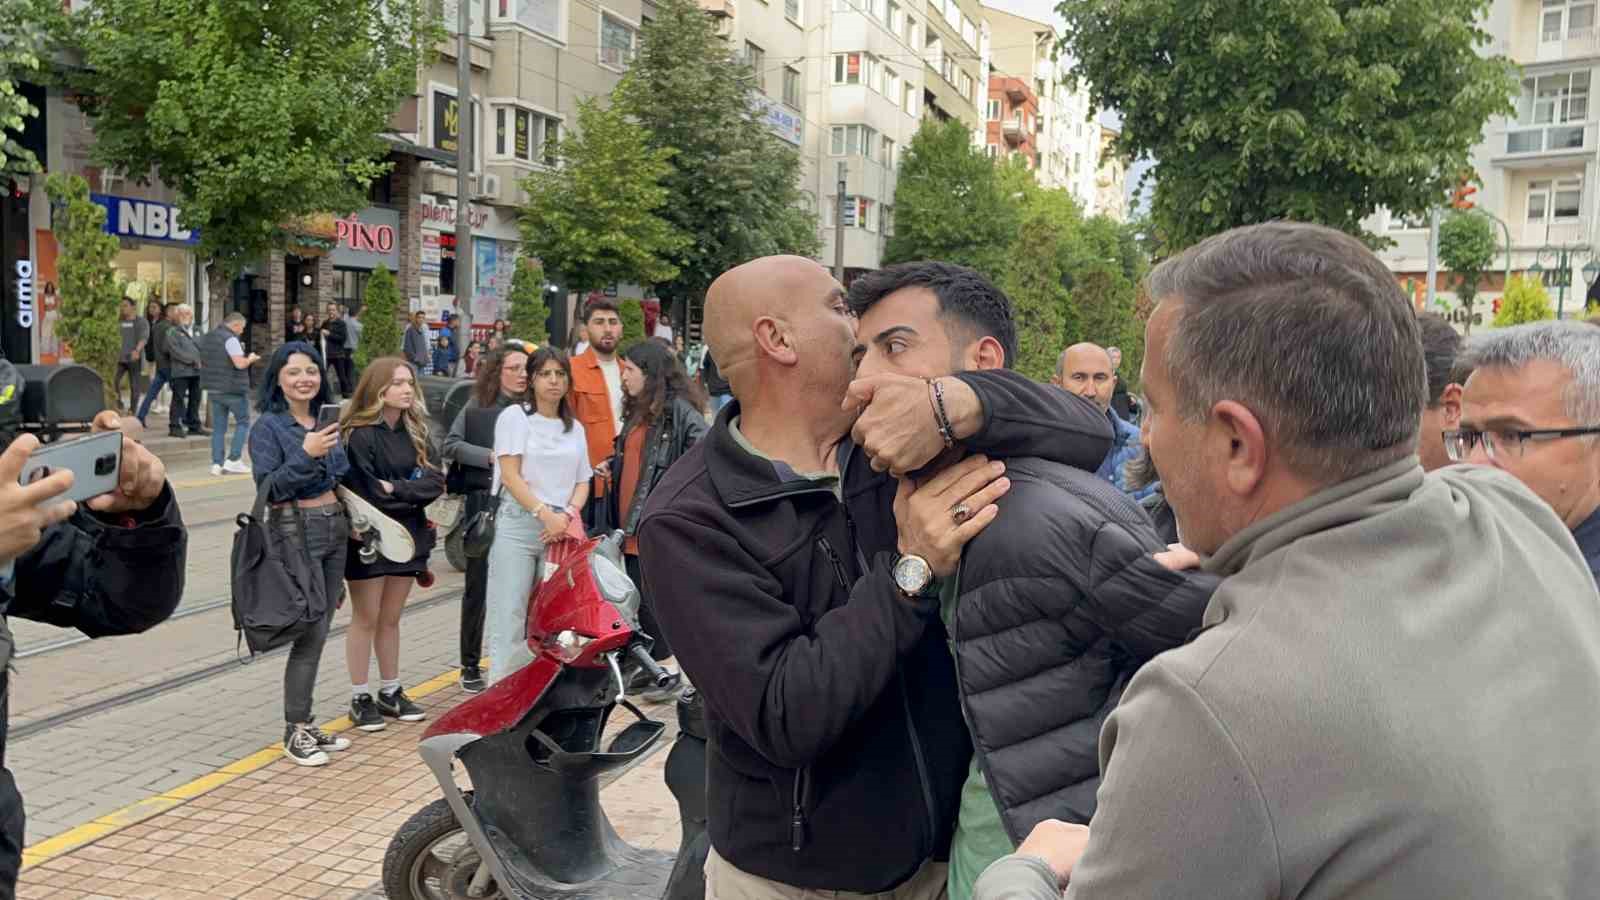 Eylemci zannedilerek gözaltına alınan vatandaş serbest bırakılınca polislere sarılarak olay yerinden ayrıldı